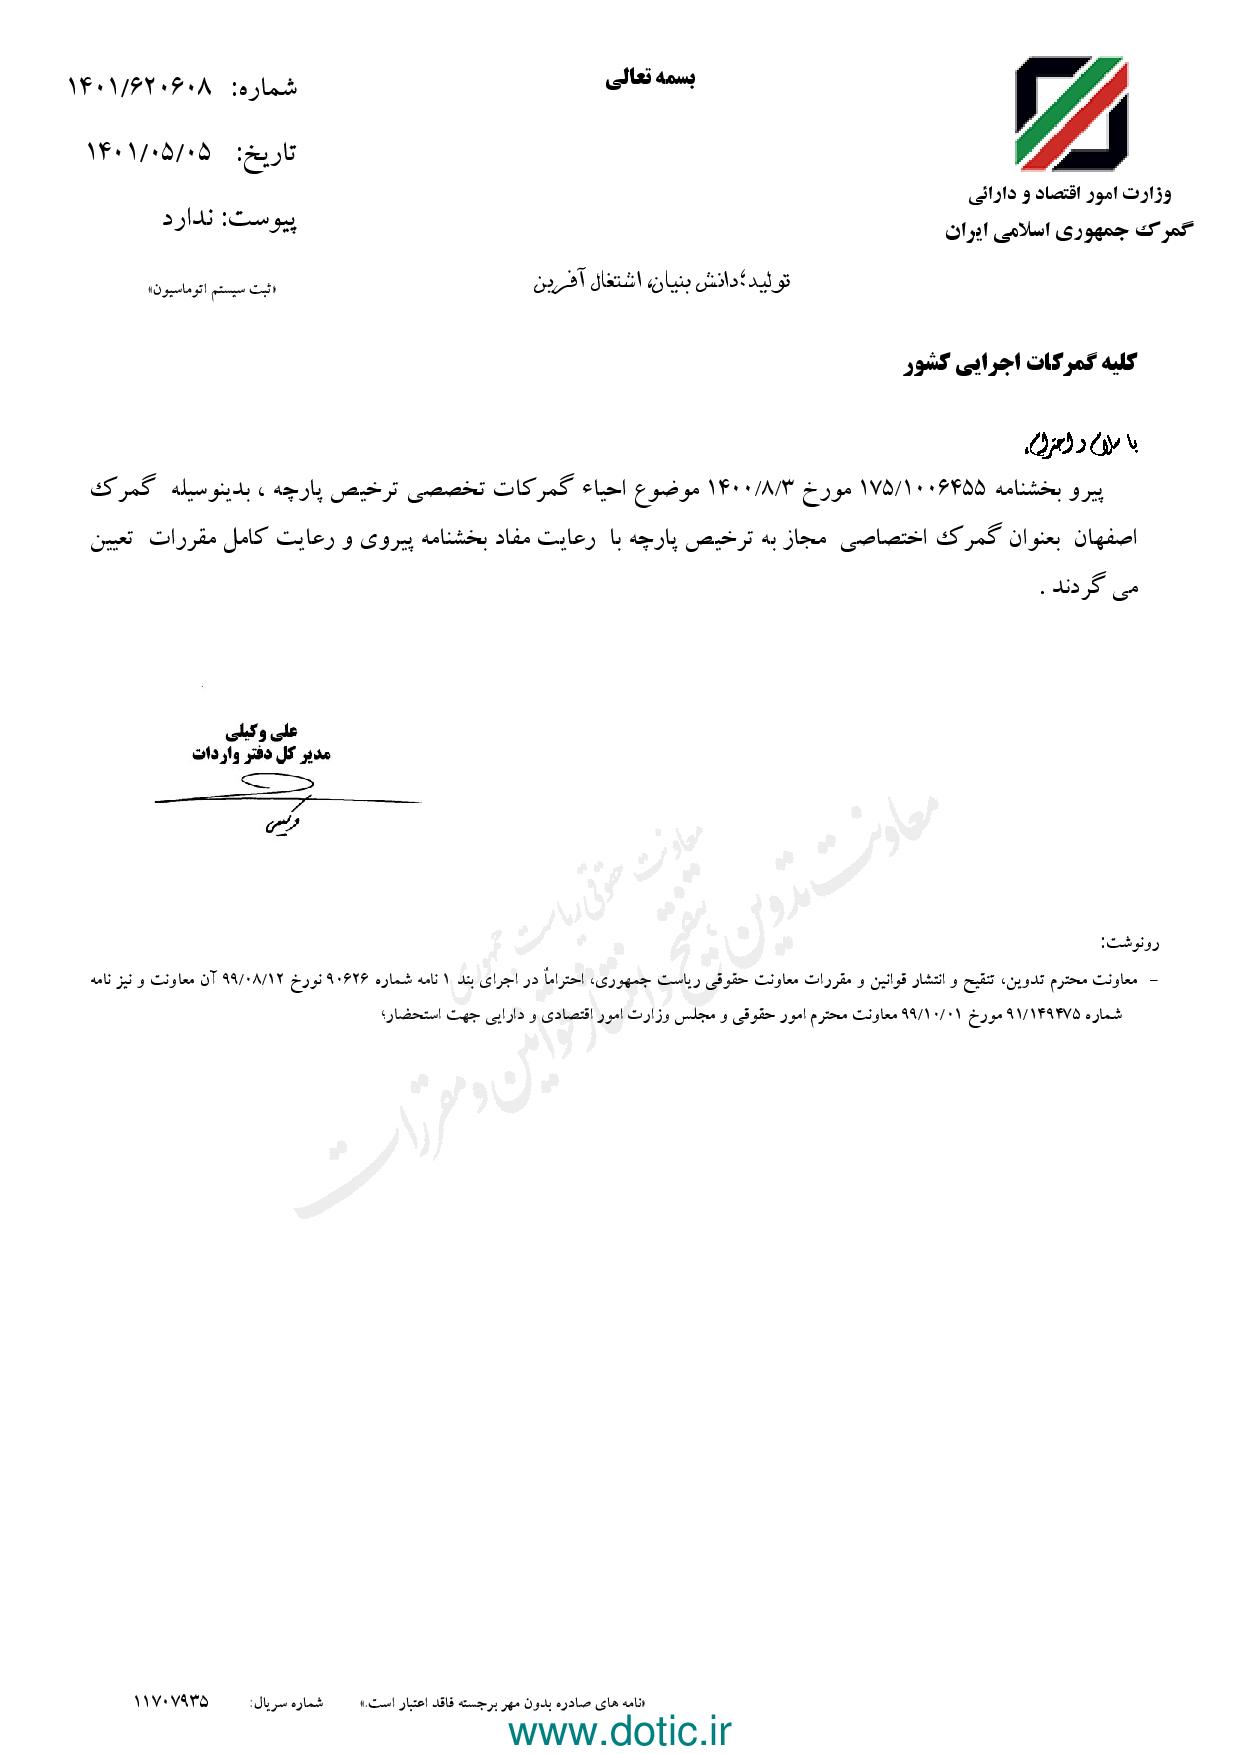 بخشنامه درخصوص تعیین گمرگ اصفهان به عنوان گمرگ اختصاصی مجاز به ترخیص پارچه ۱۴۰۱/۰۵/۰۵